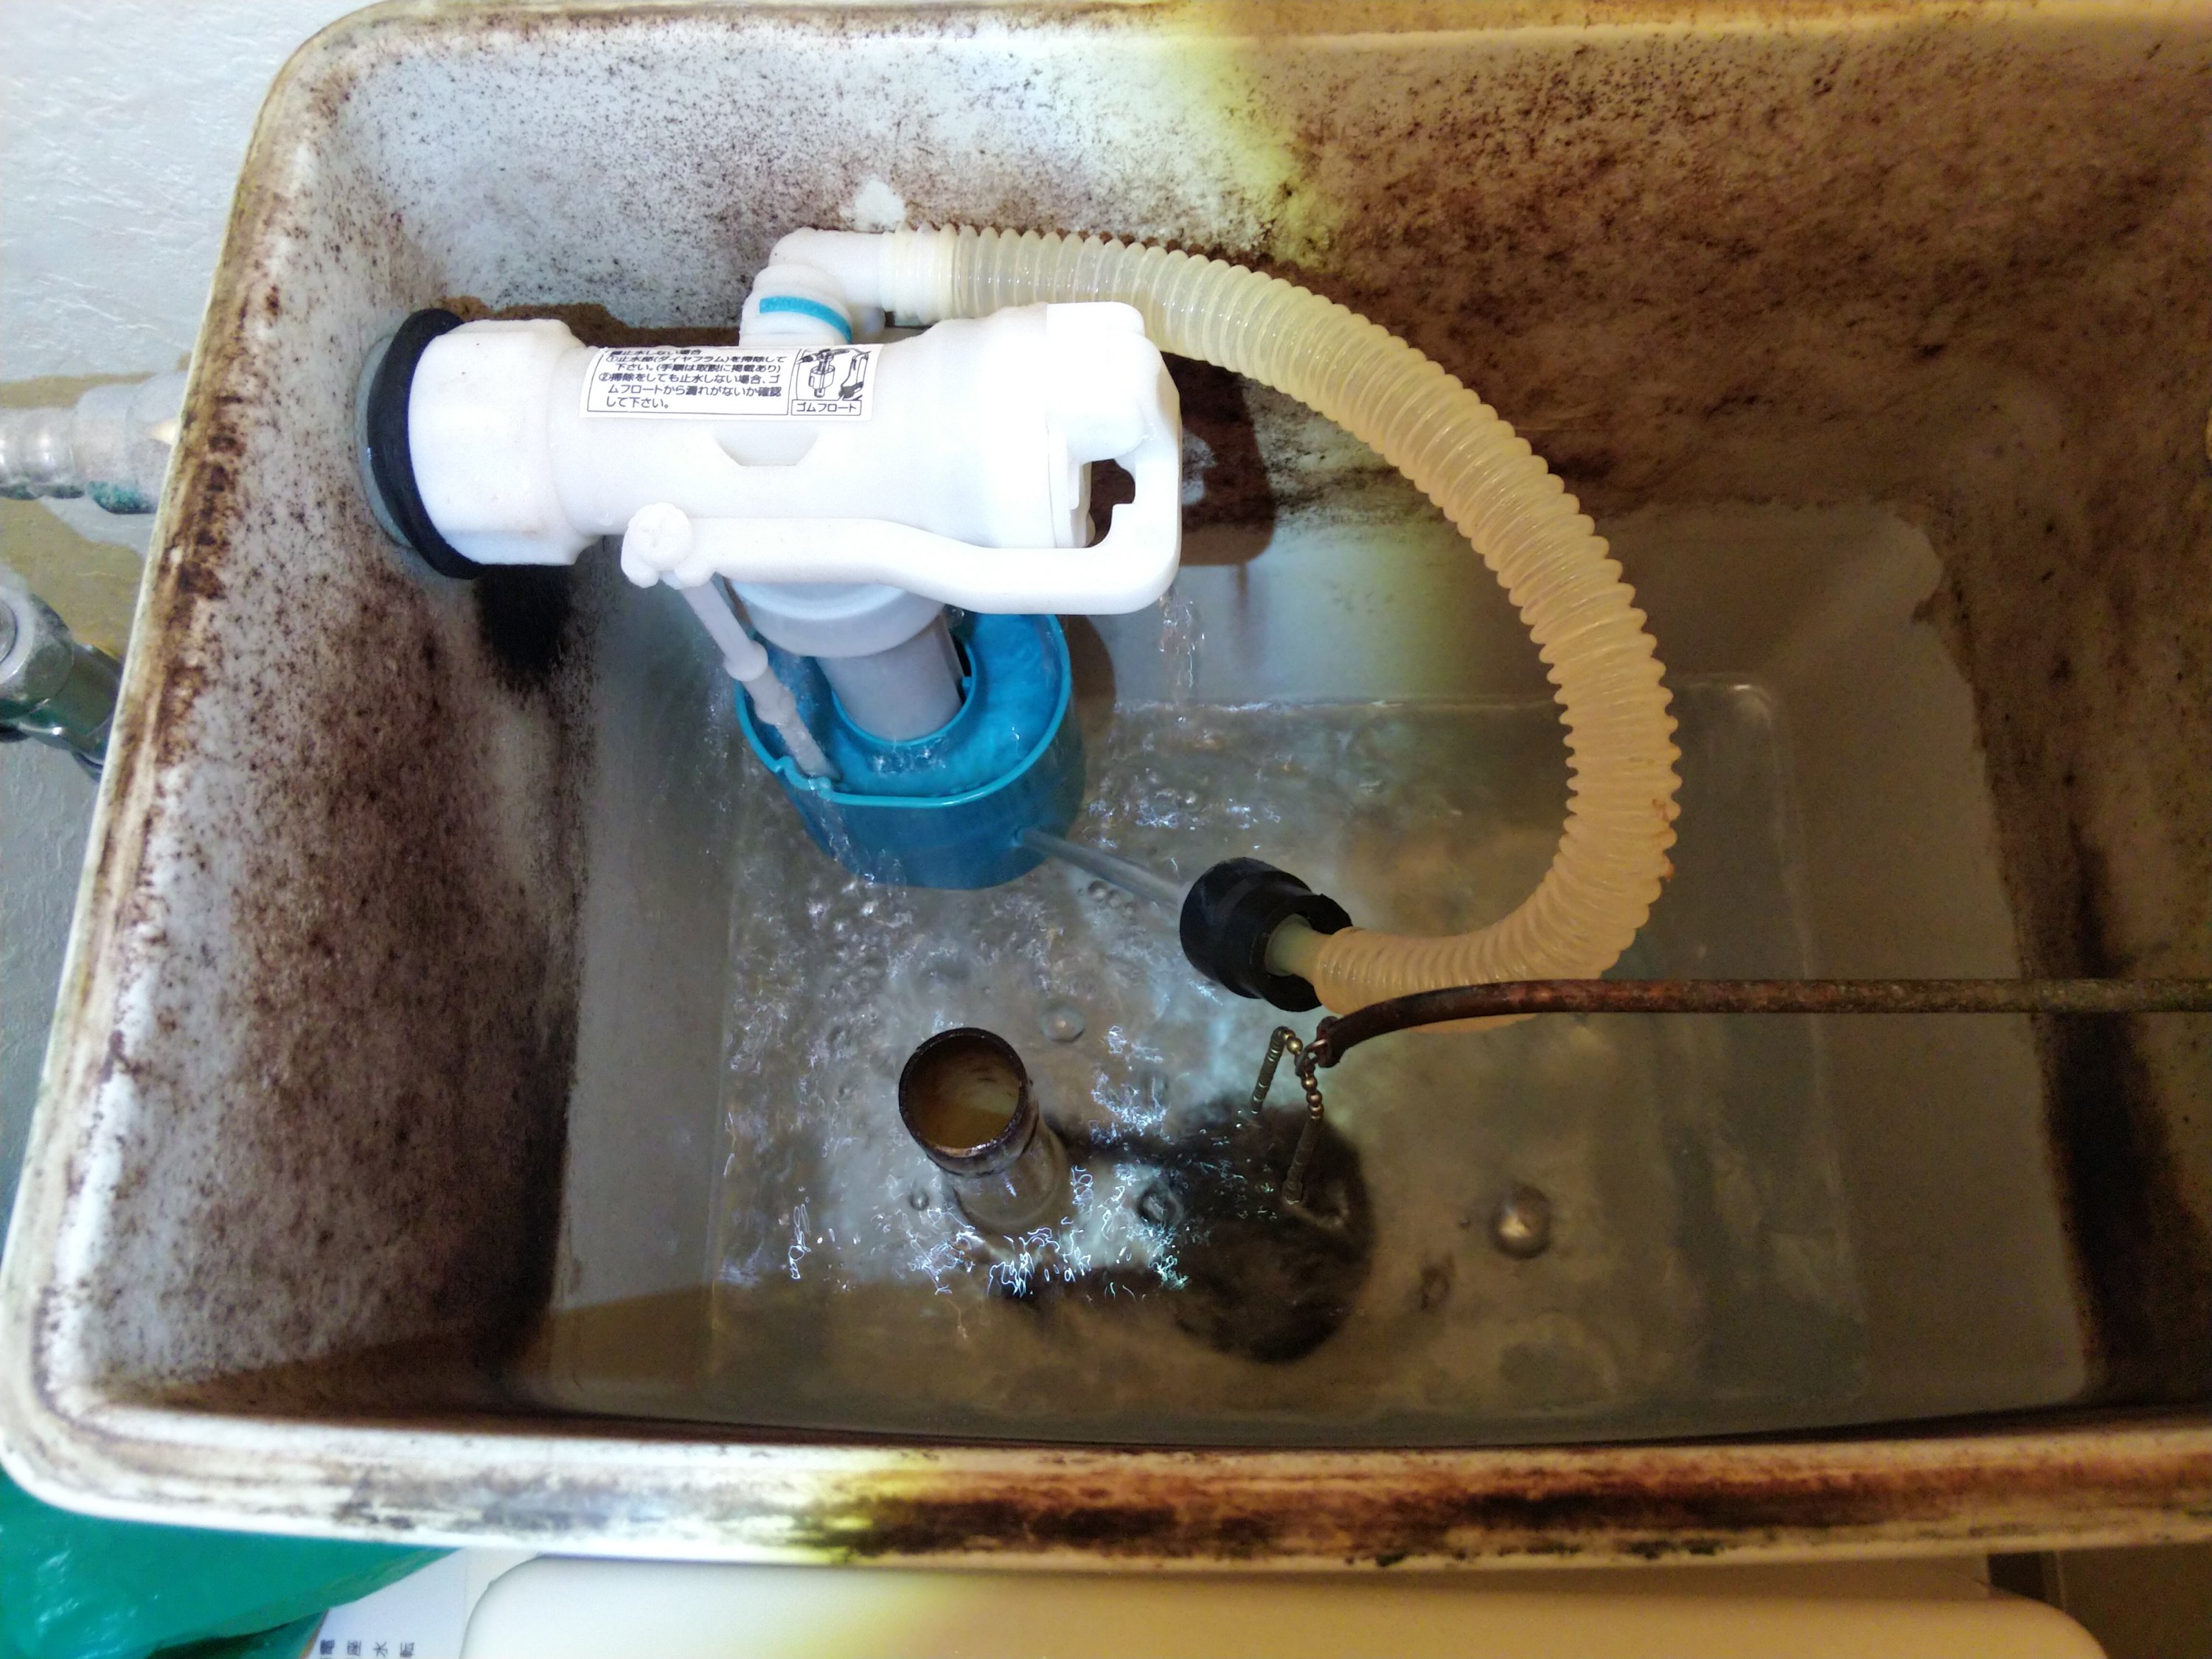 トイレ水漏れ修理 ダイヤフラム式 アクア アテンド さいたま市 水漏れ トイレつまり修理 漏水調査 給湯器